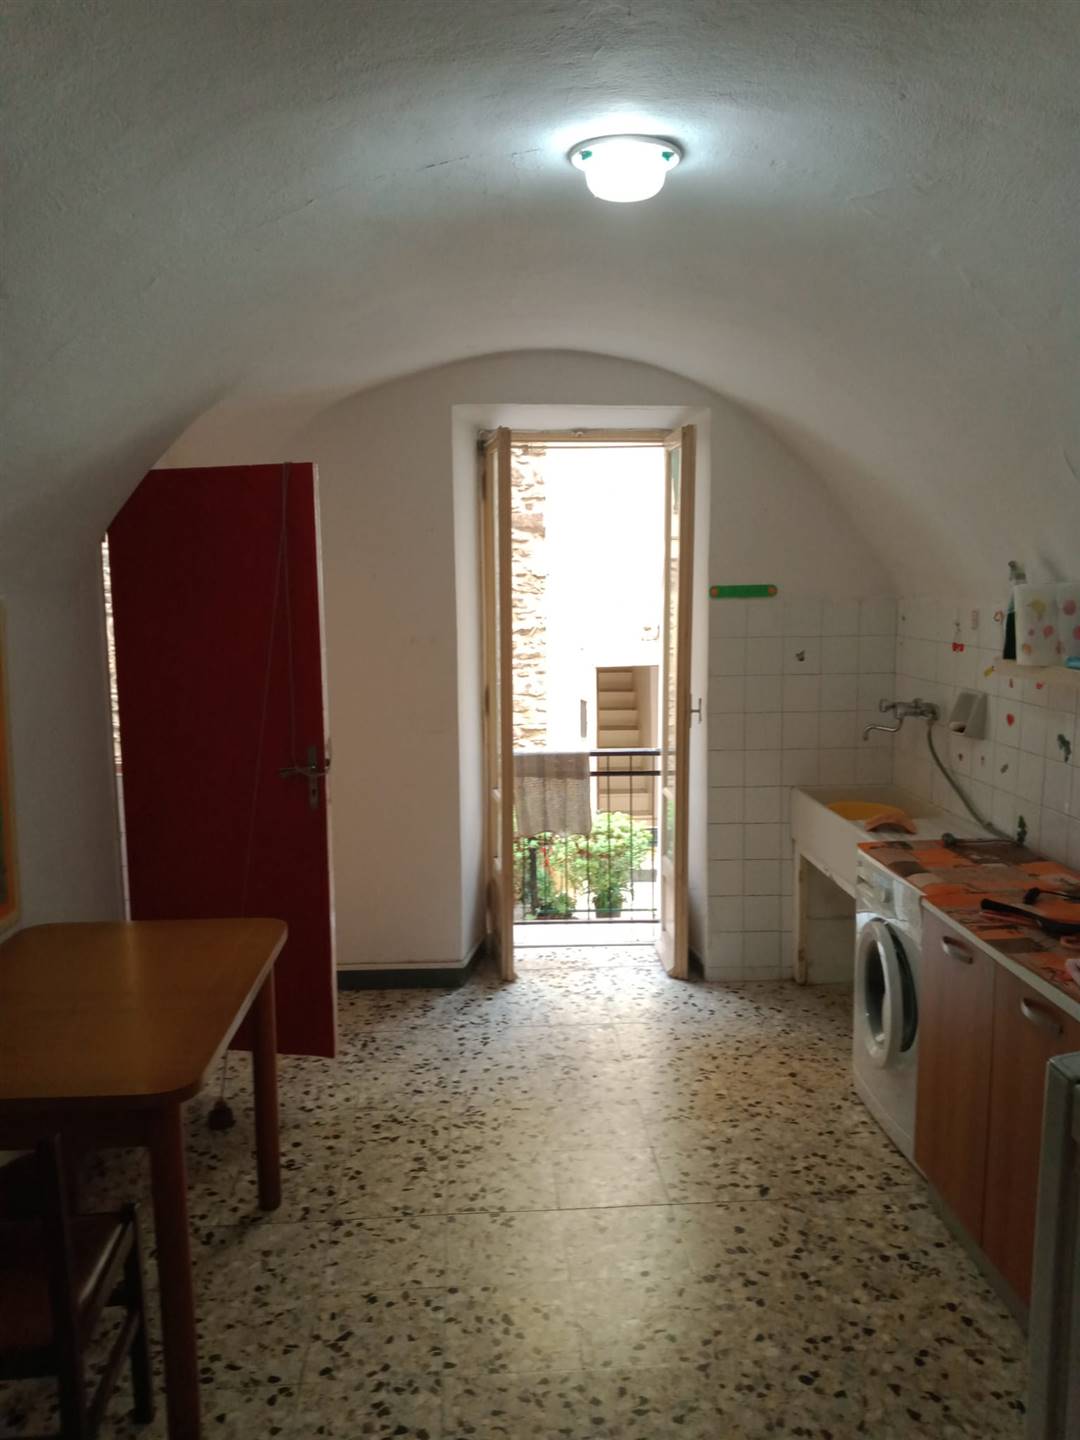 Appartamento in vendita a Isolabona, 2 locali, prezzo € 30.000 | PortaleAgenzieImmobiliari.it